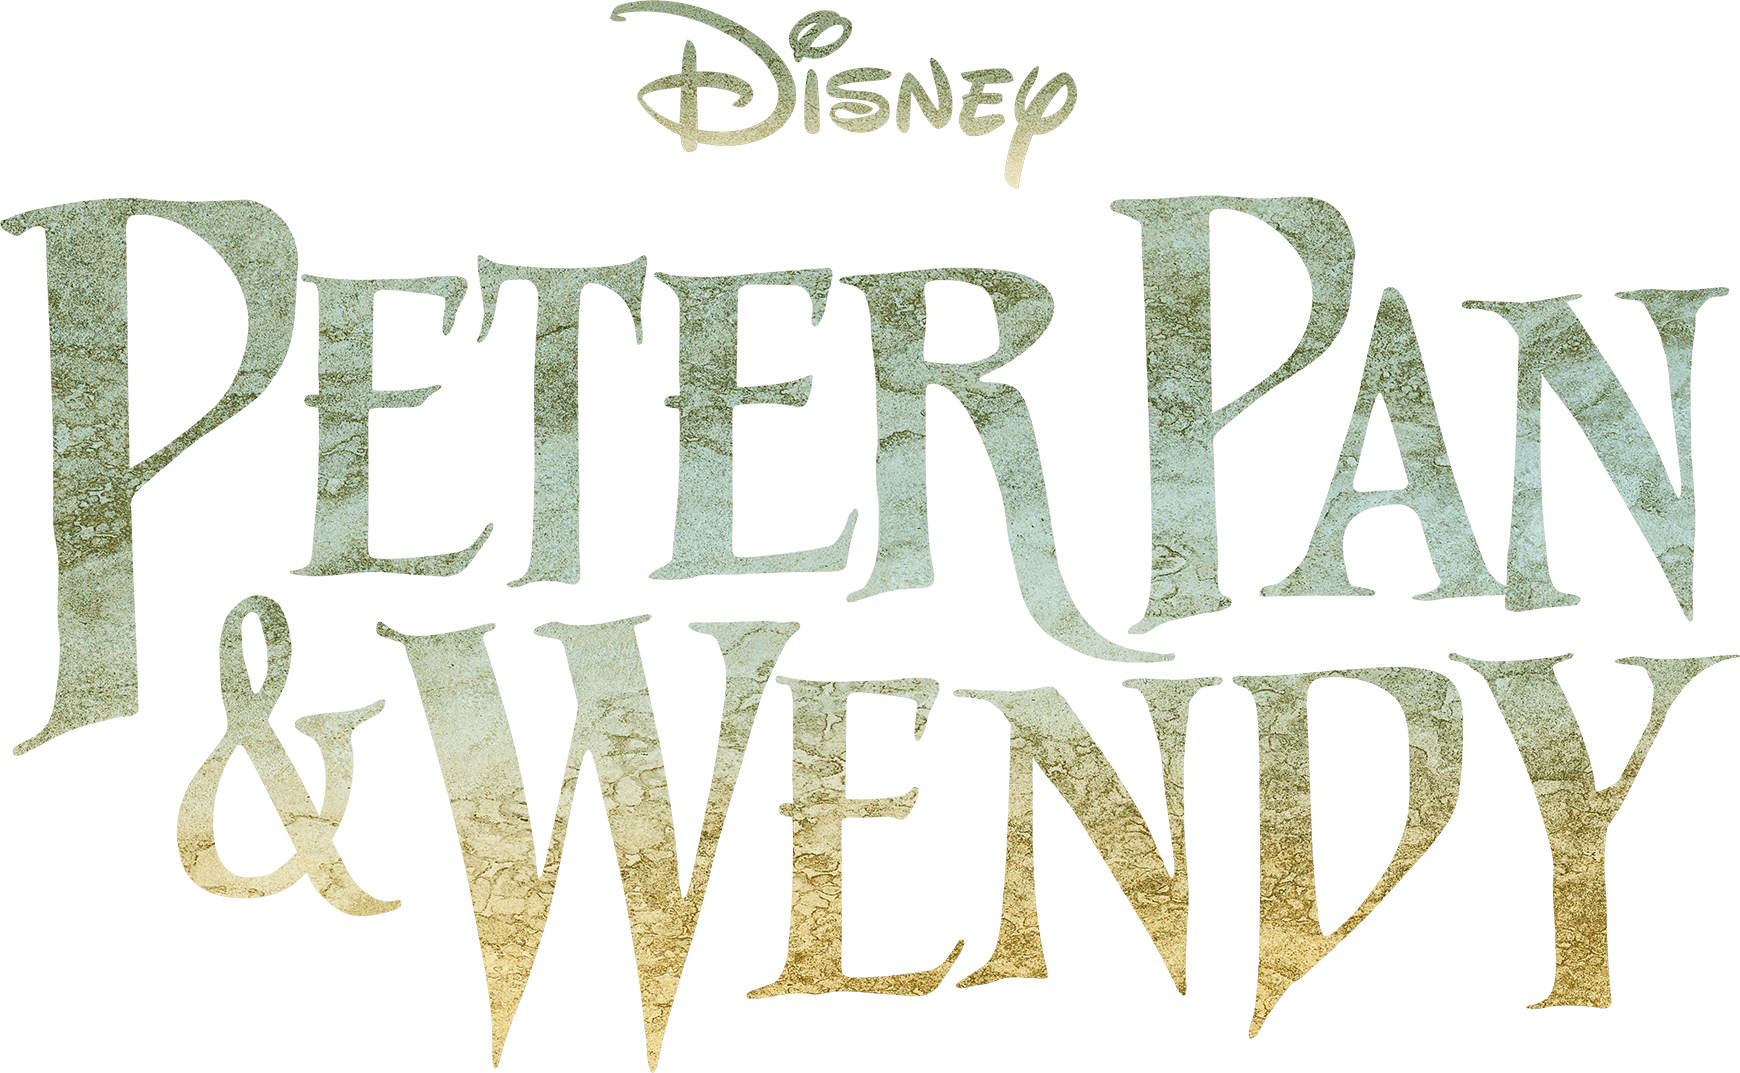 Peter Pan & Wendy logo